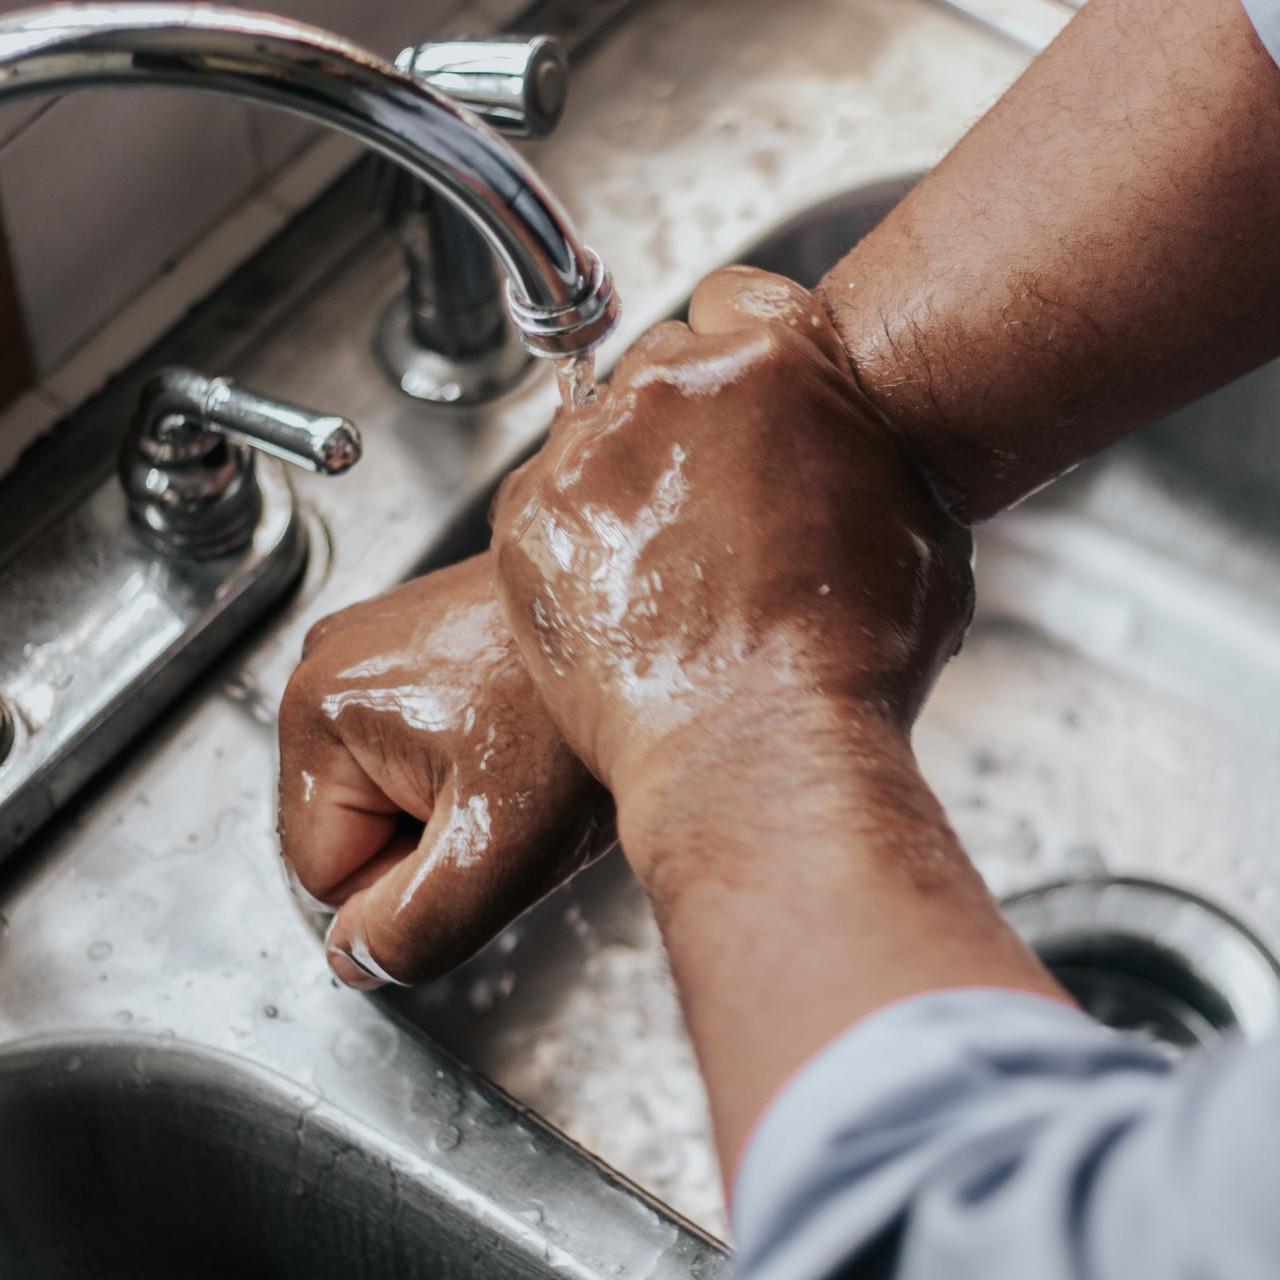 Käsienpesu on helppo ja tehokas keino bakteeritartuntojen vähentämiseksi